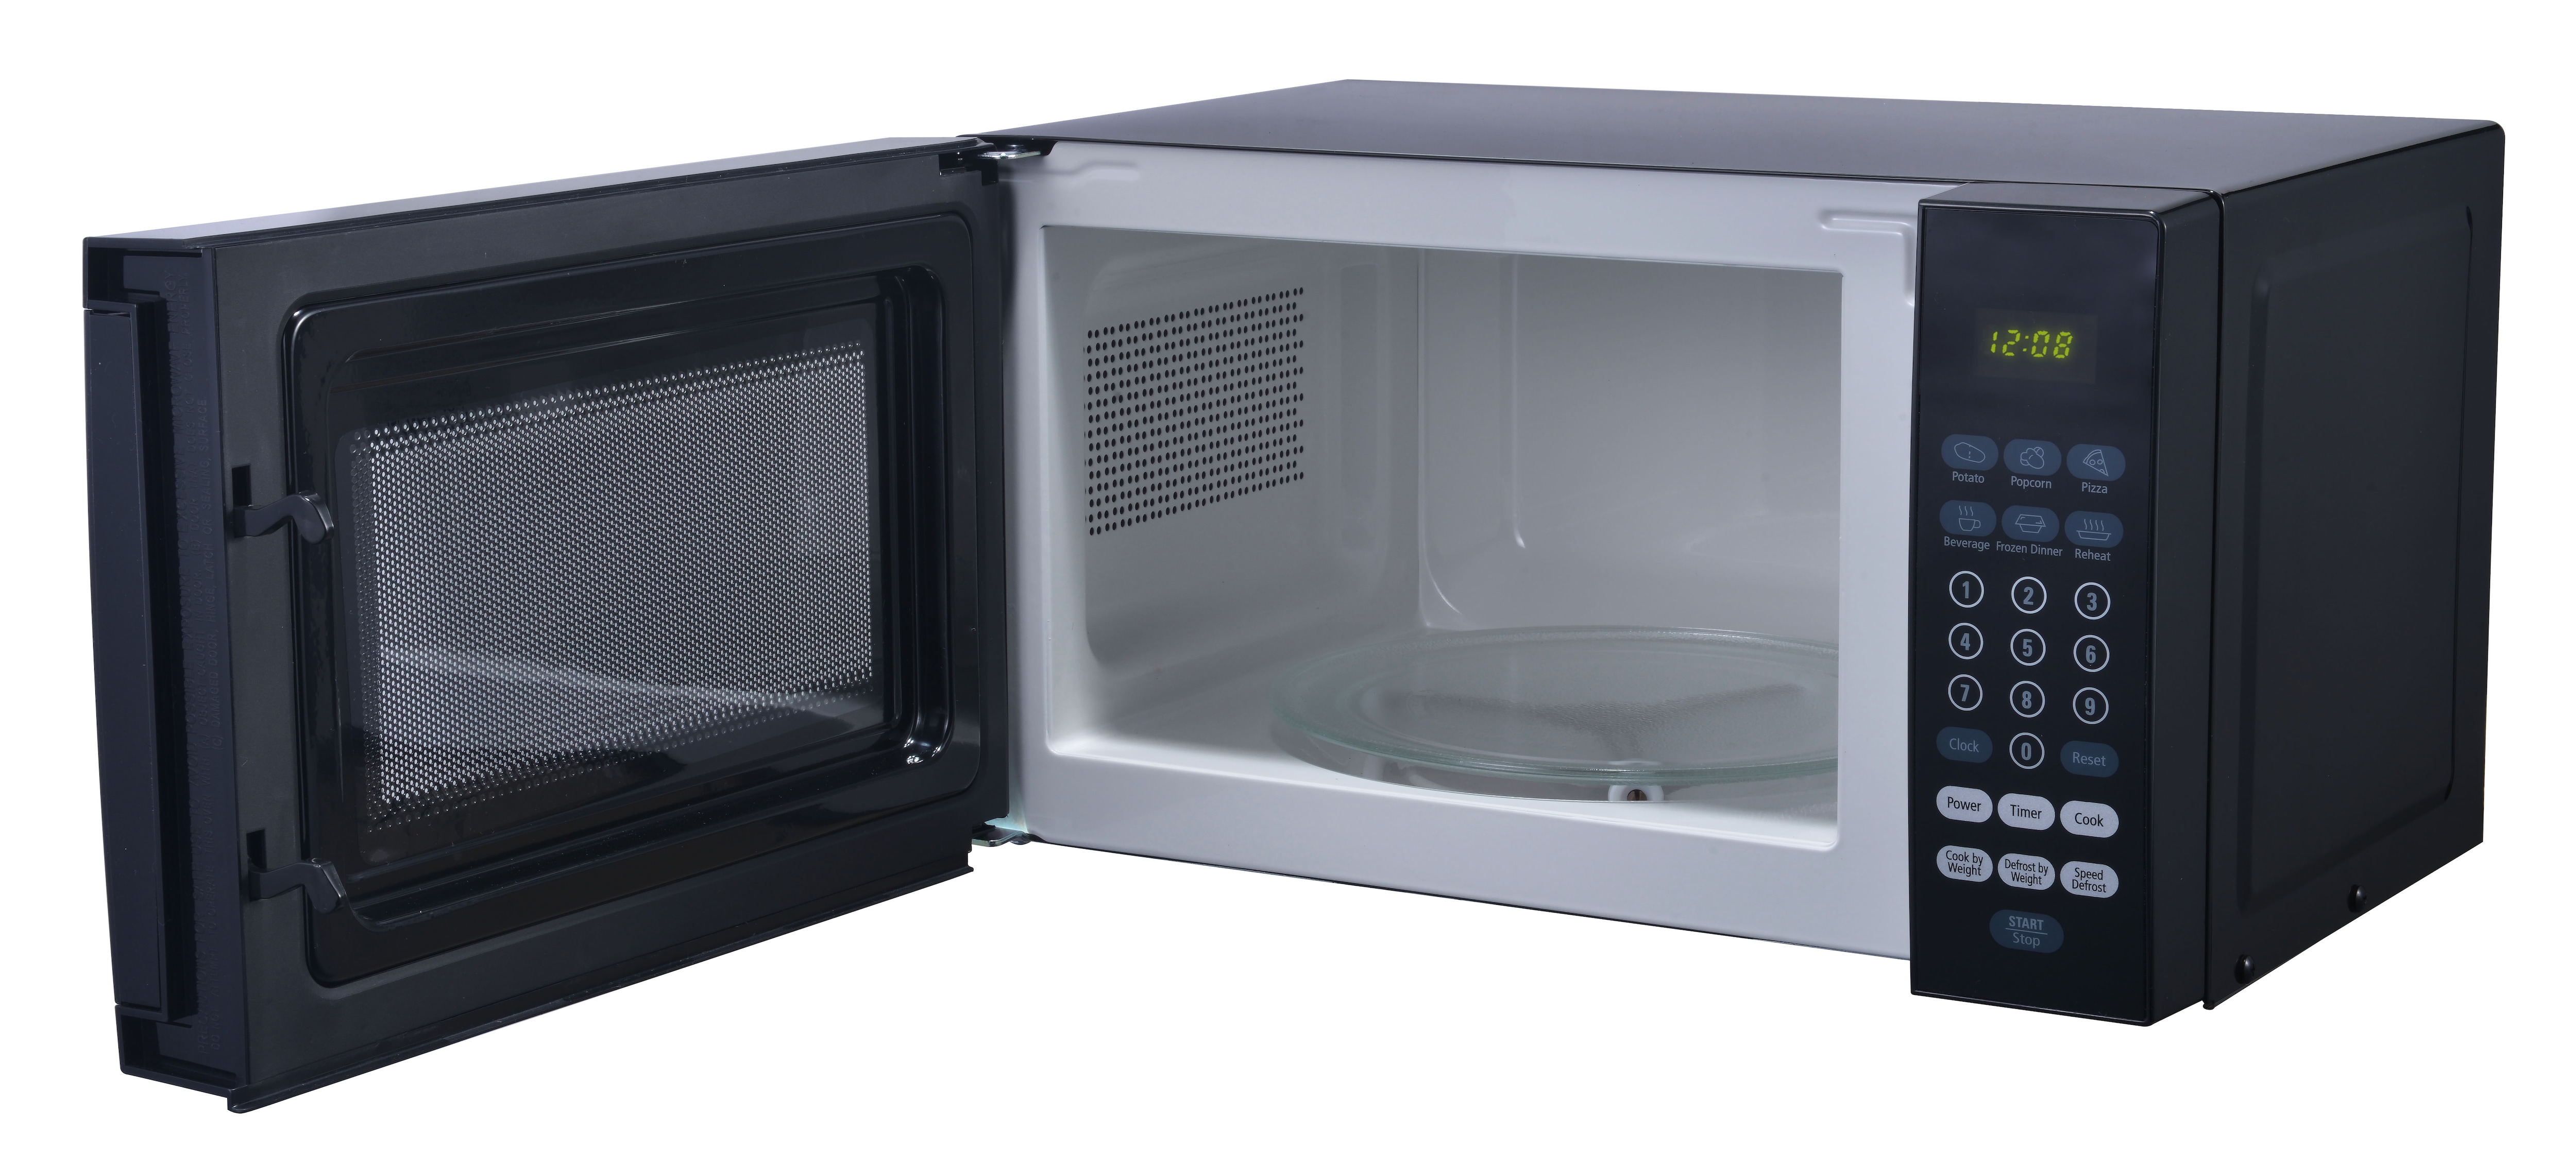 Sunbeam 0.7 cu ft 700 Watt Microwave Oven - 4 Crew